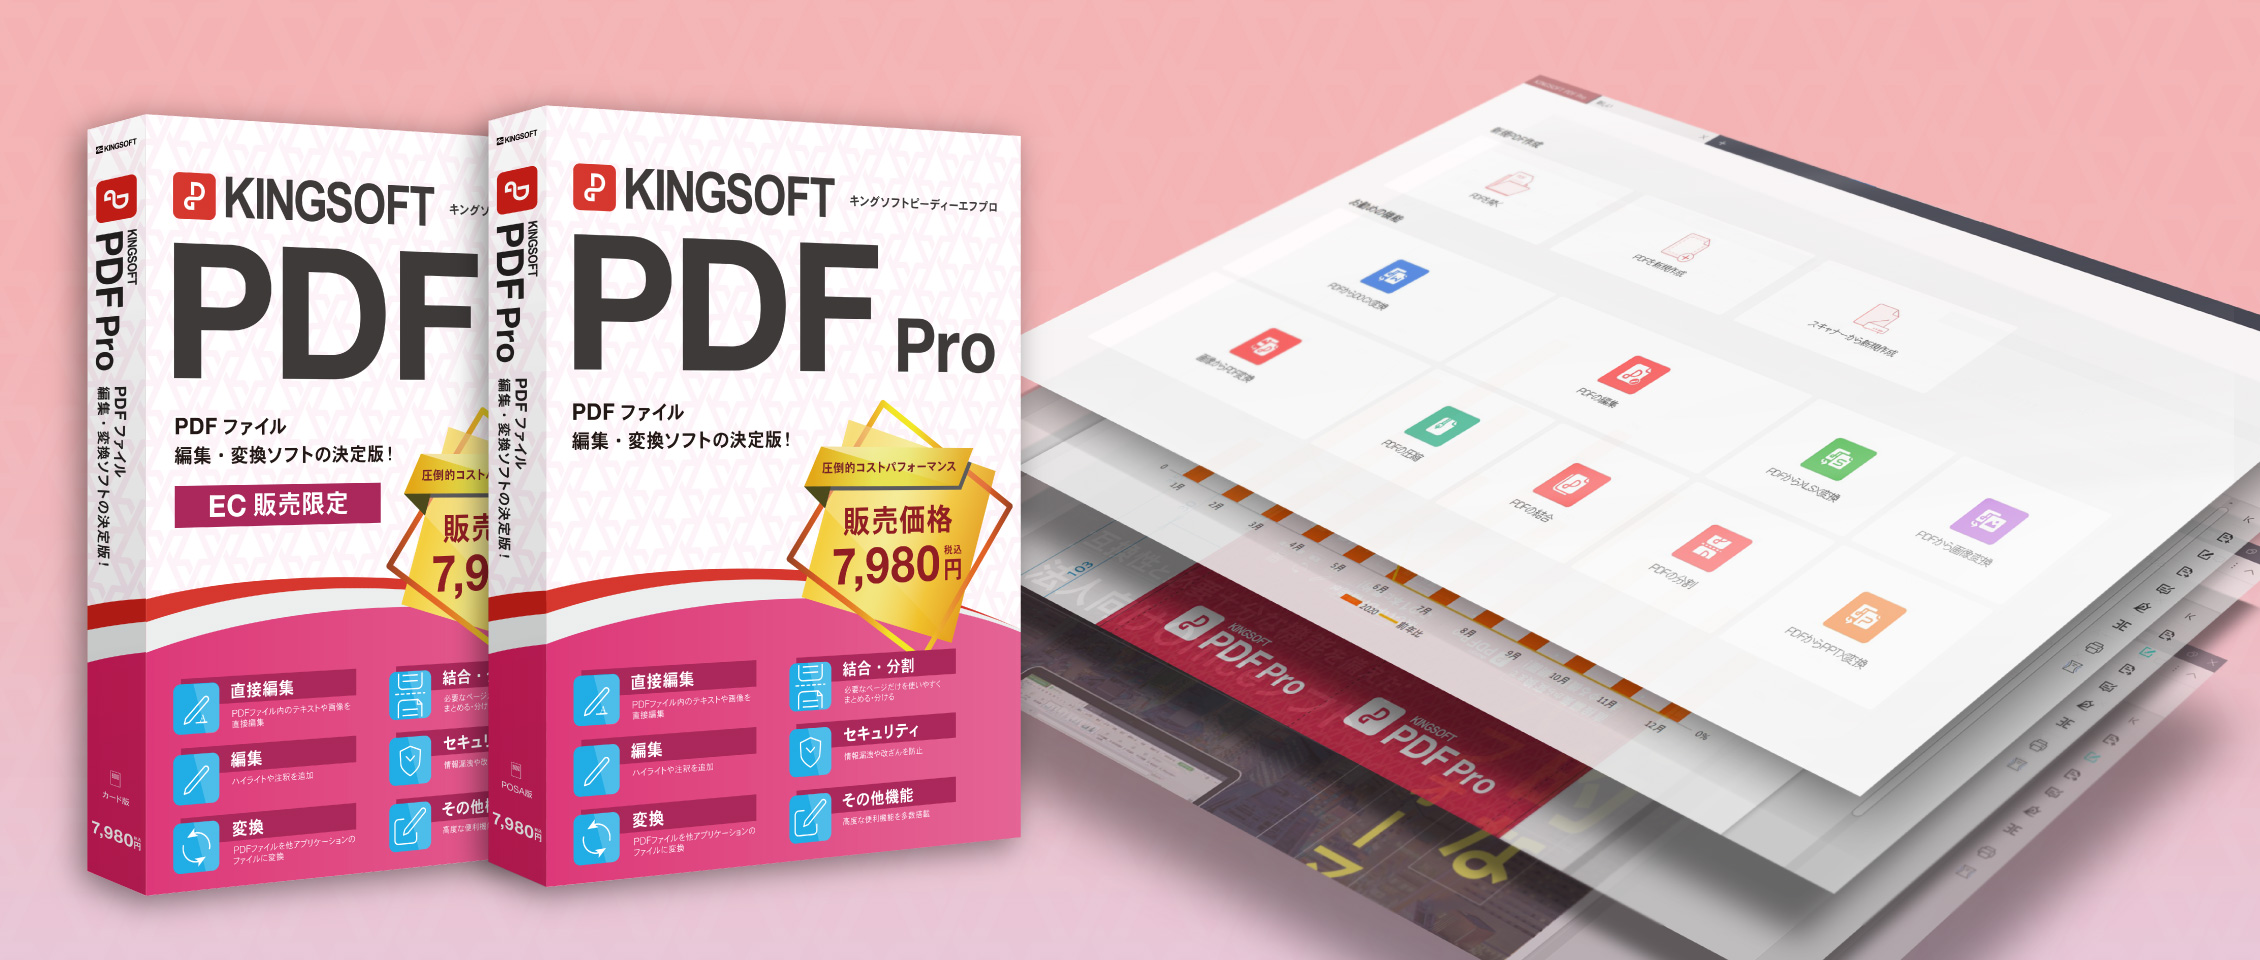 KINGSOFT_PDF_Pro